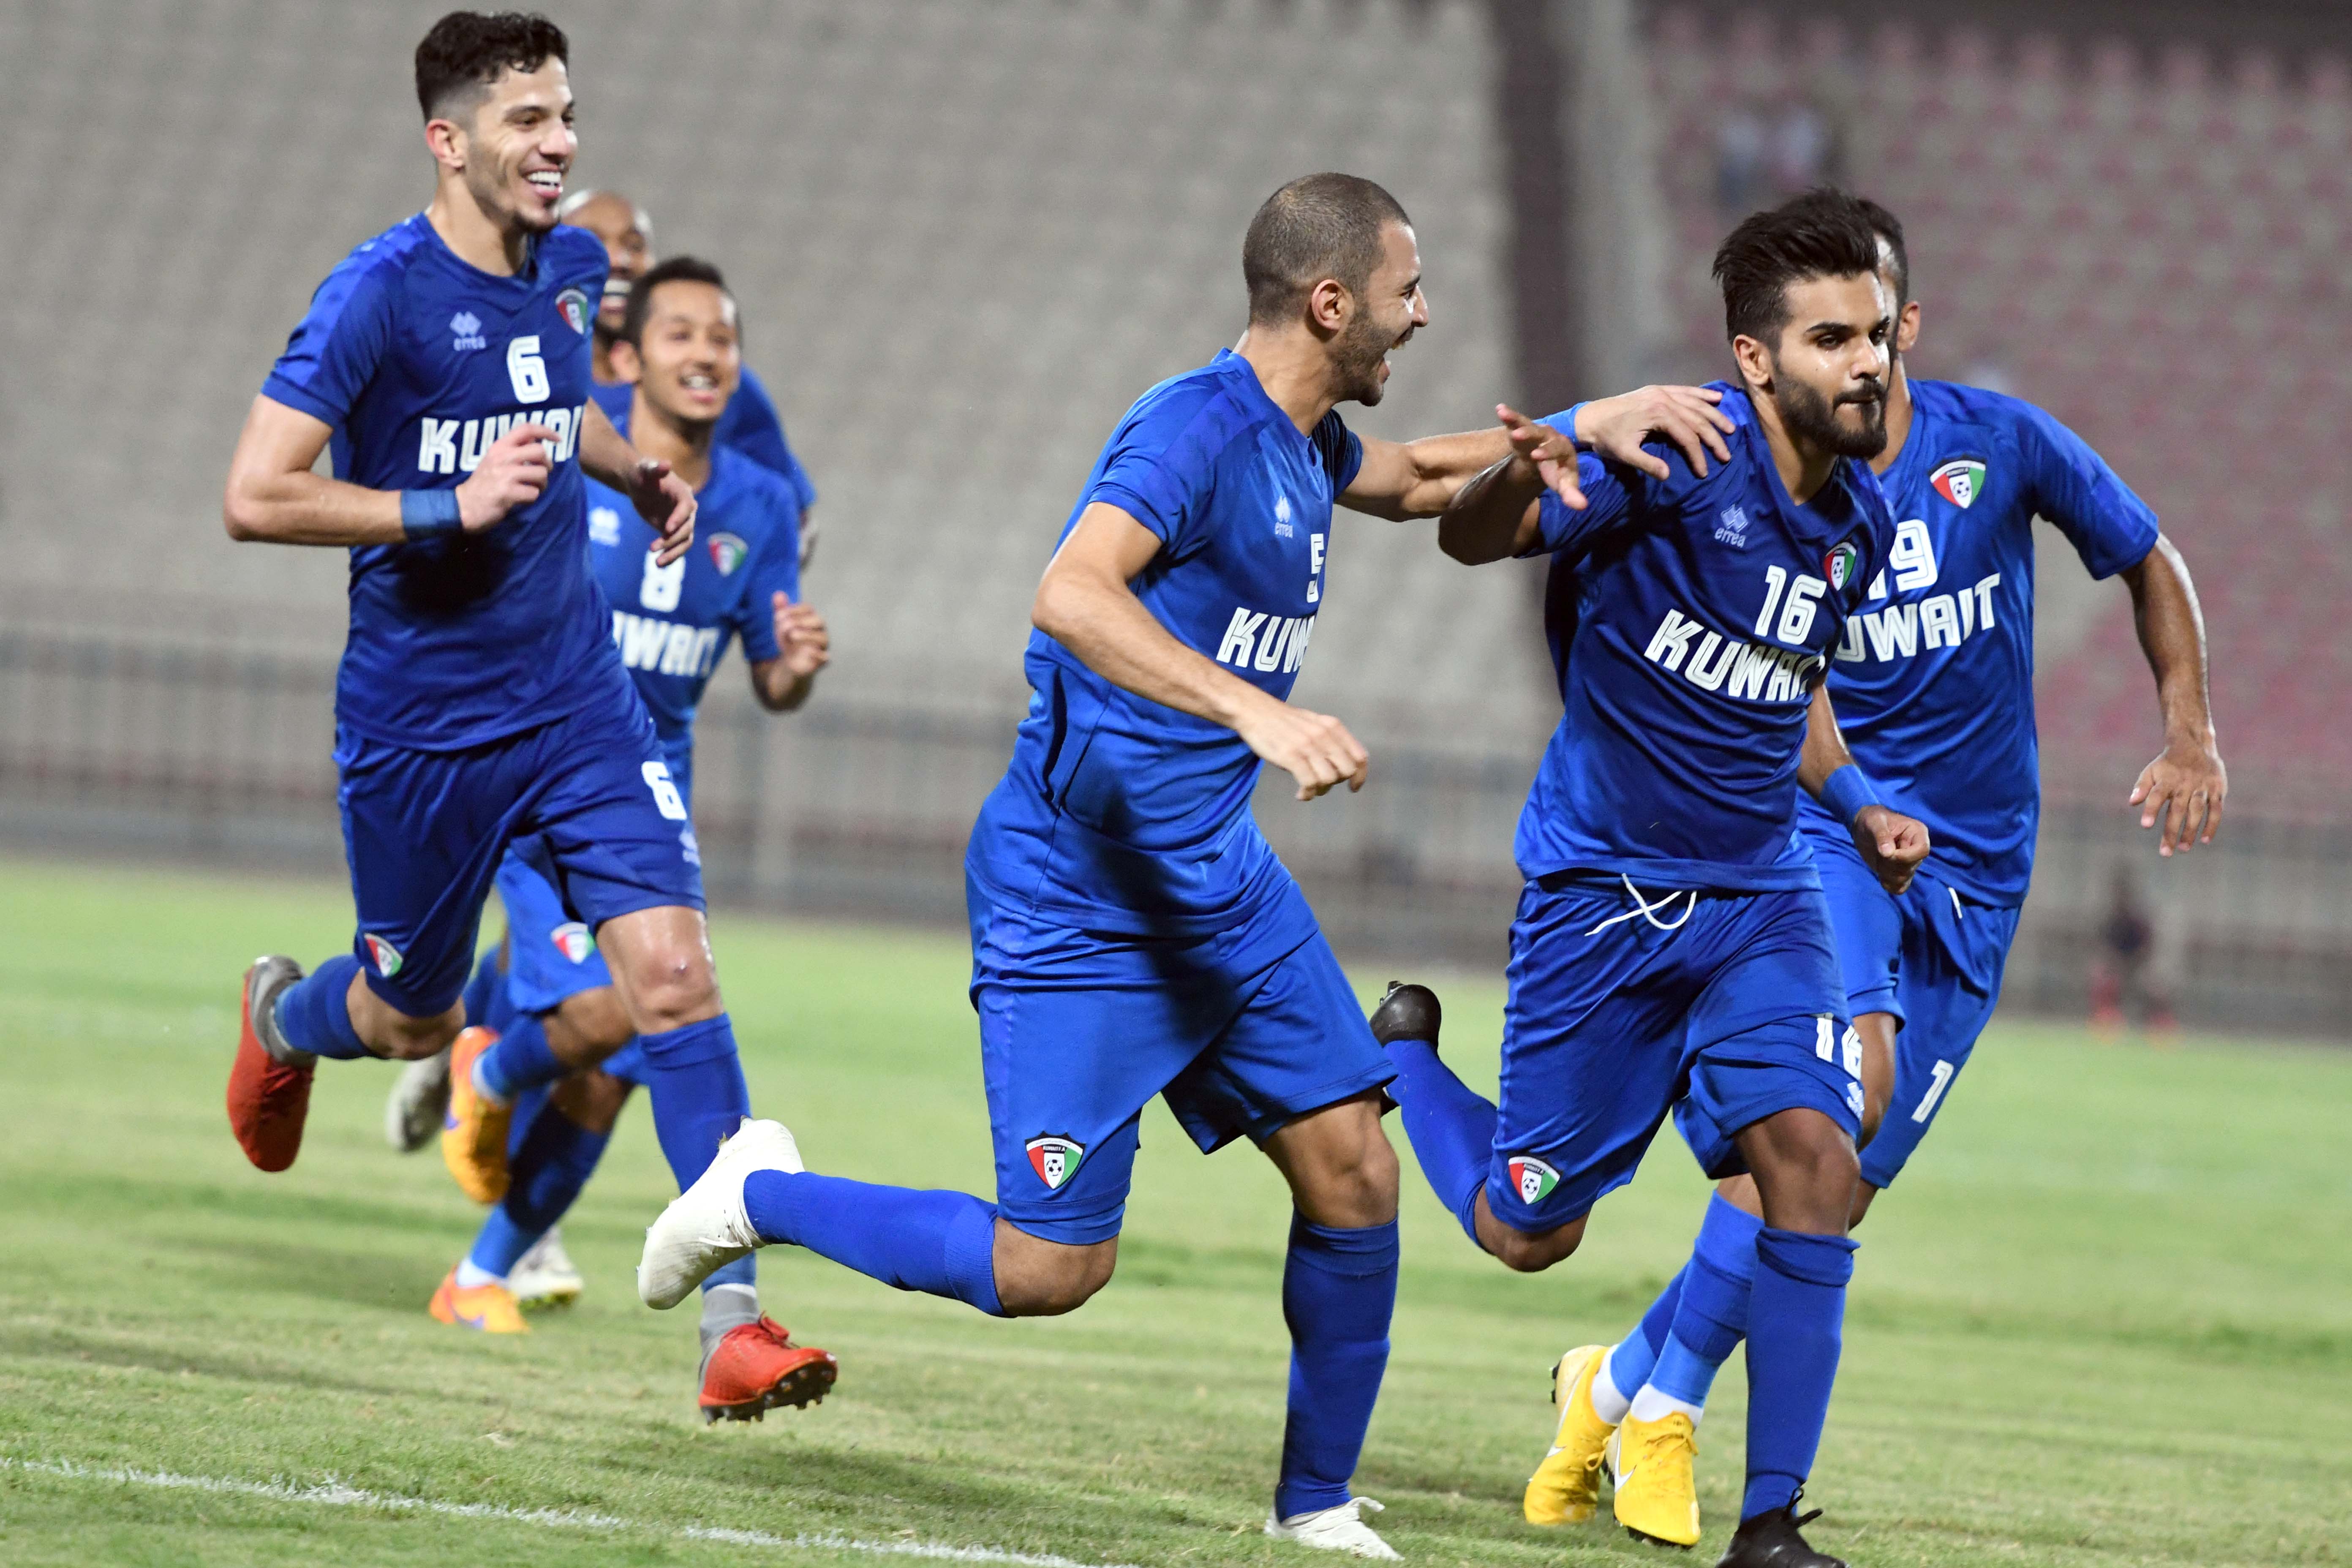 Kuwait edge win over Lebanon to break record unbeaten run